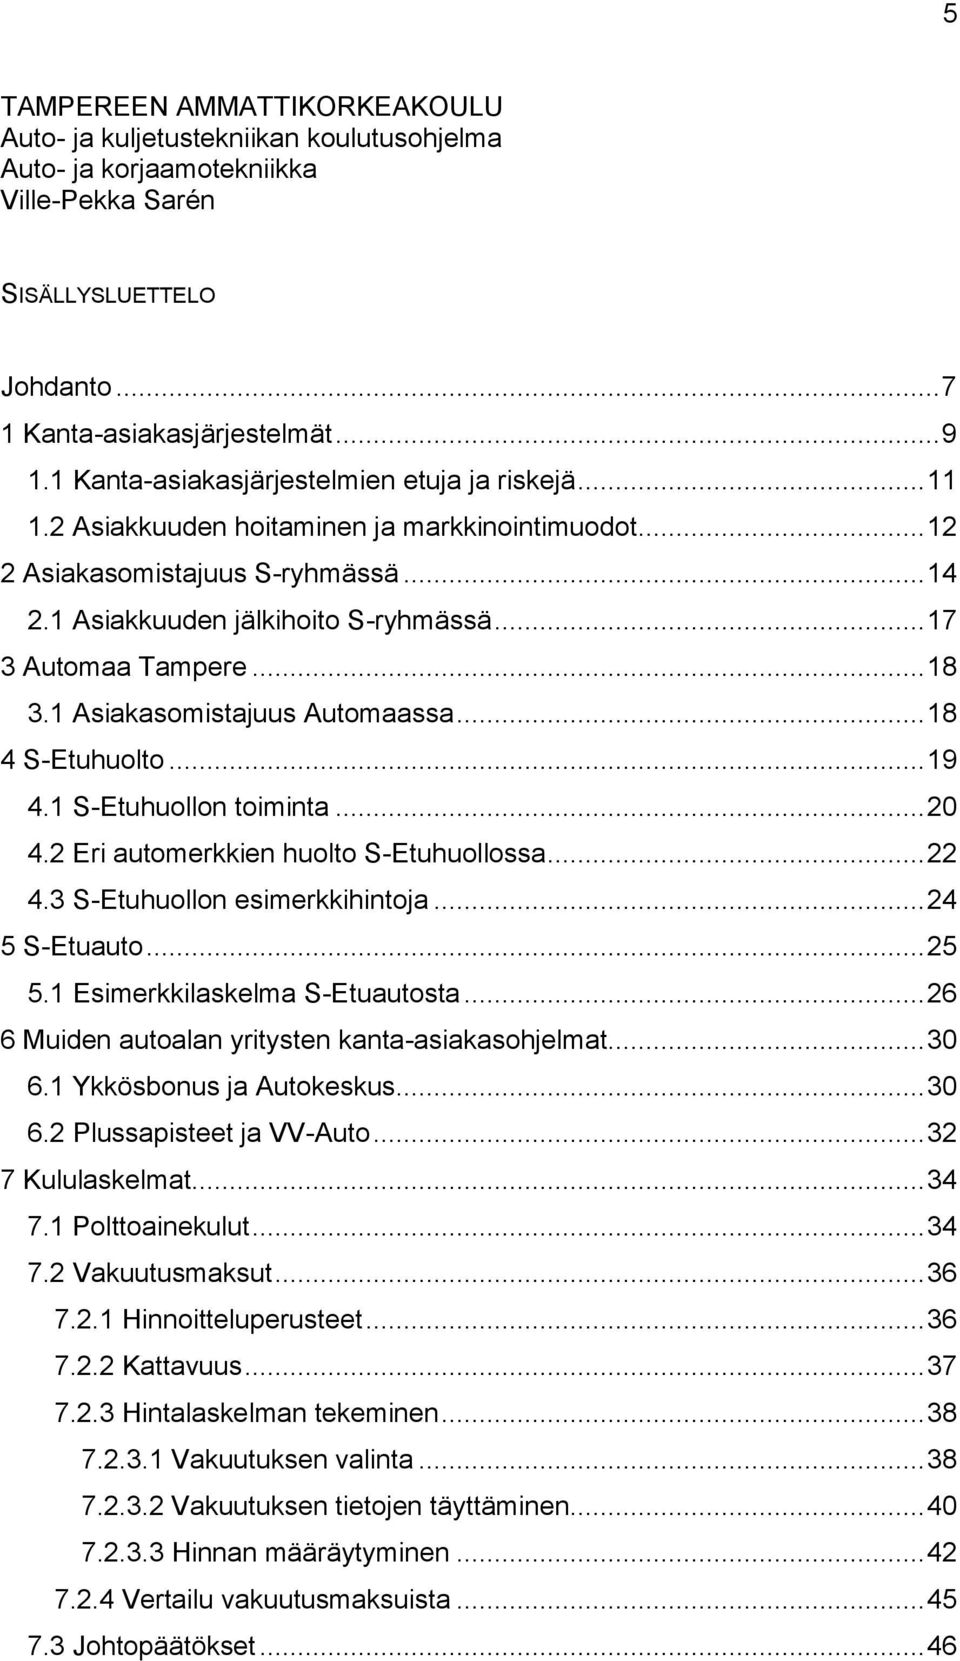 .. 17 3 Automaa Tampere... 18 3.1 Asiakasomistajuus Automaassa... 18 4 S-Etuhuolto... 19 4.1 S-Etuhuollon toiminta... 20 4.2 Eri automerkkien huolto S-Etuhuollossa... 22 4.